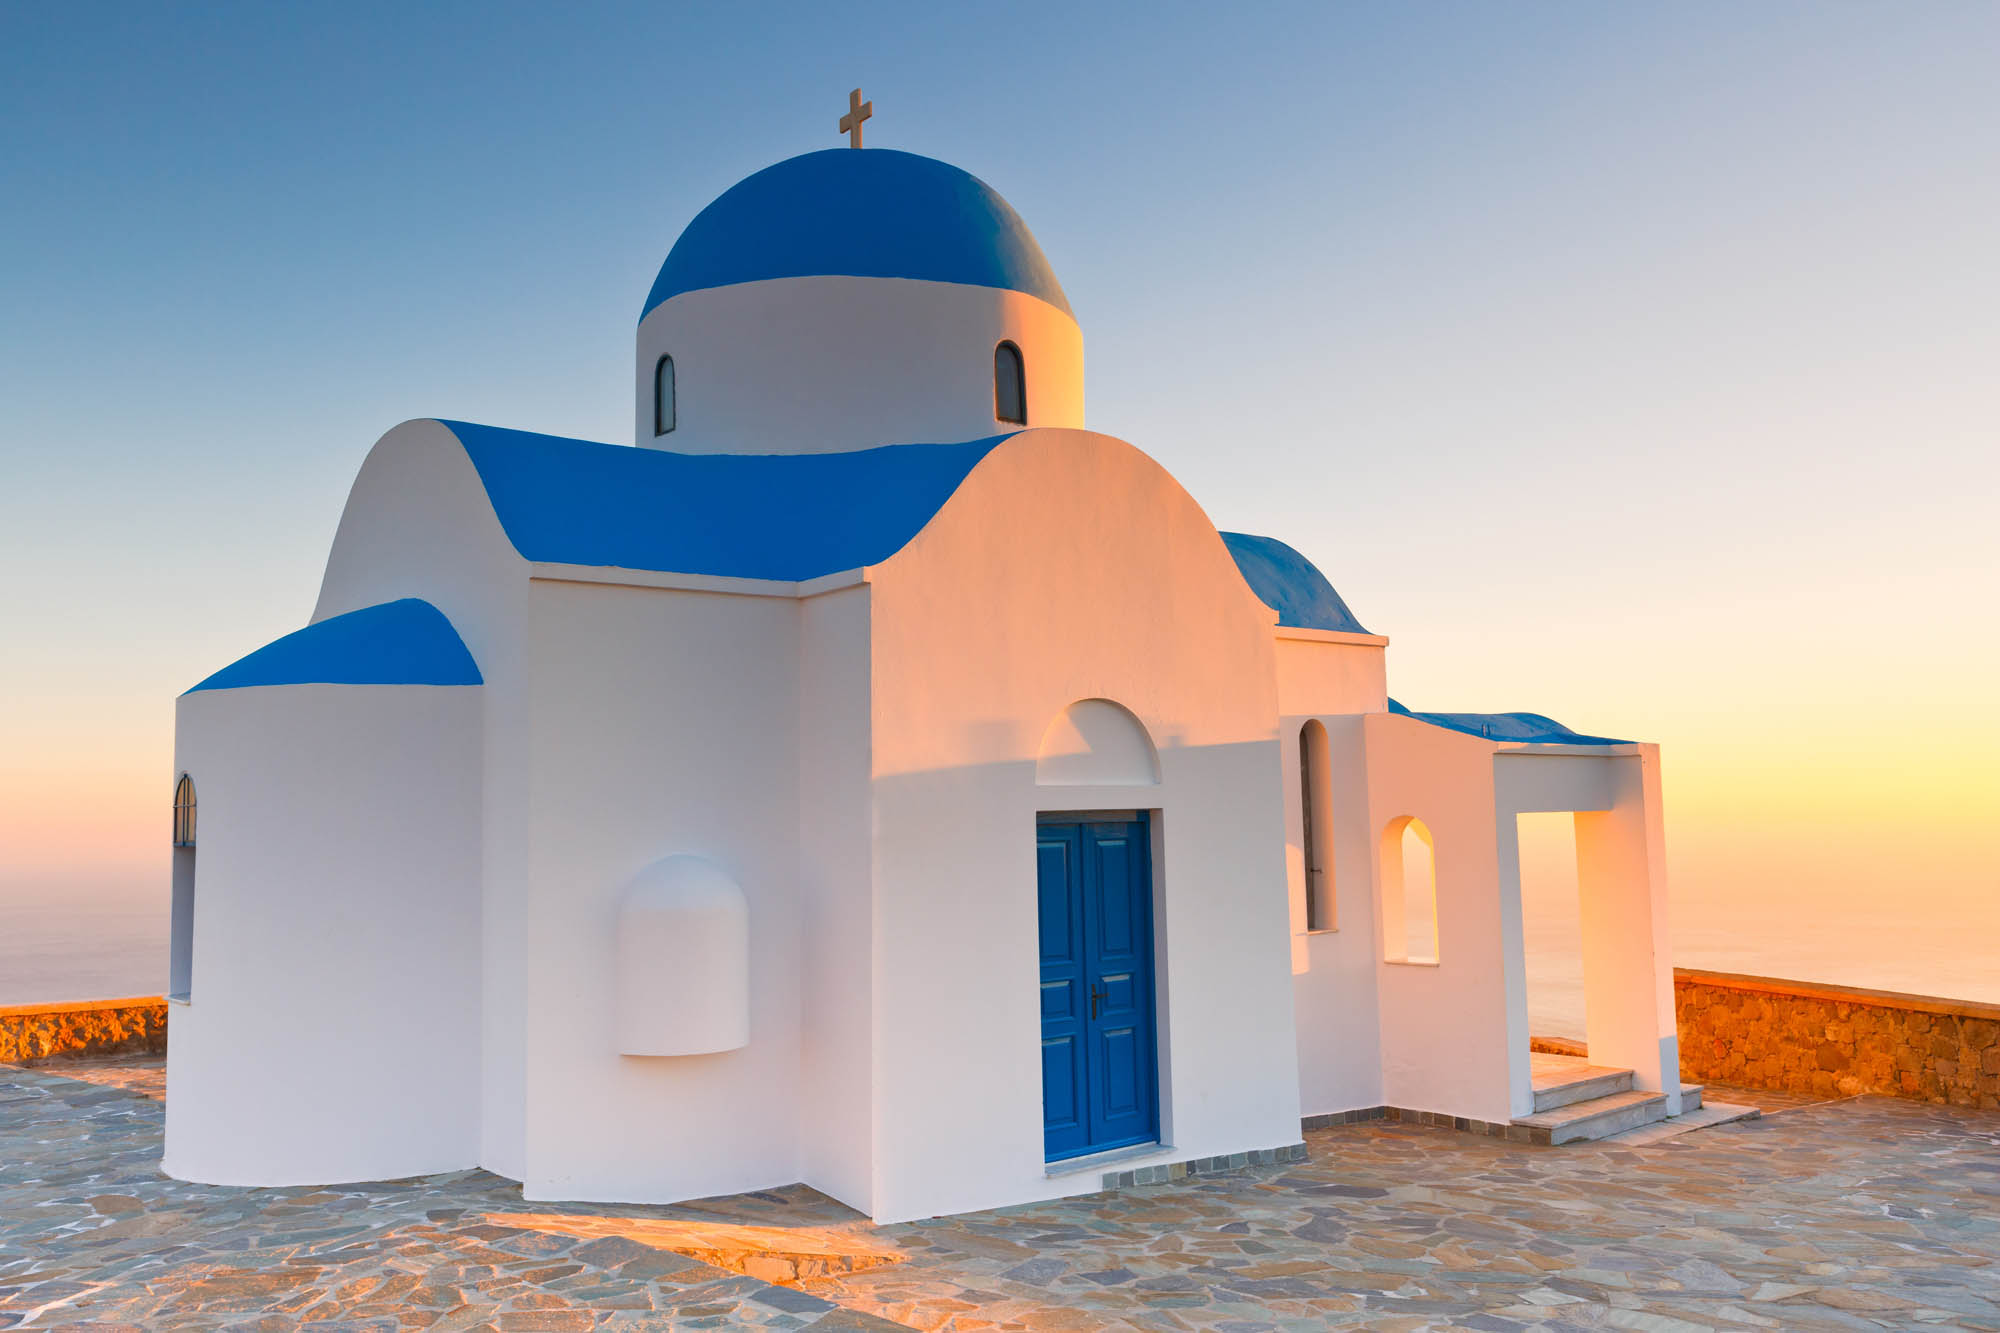 cerkiew na wzniesieniu, wyspa nisyros, cerkiew w świetle zachodzącego słońca, niebiesko biała, grecka